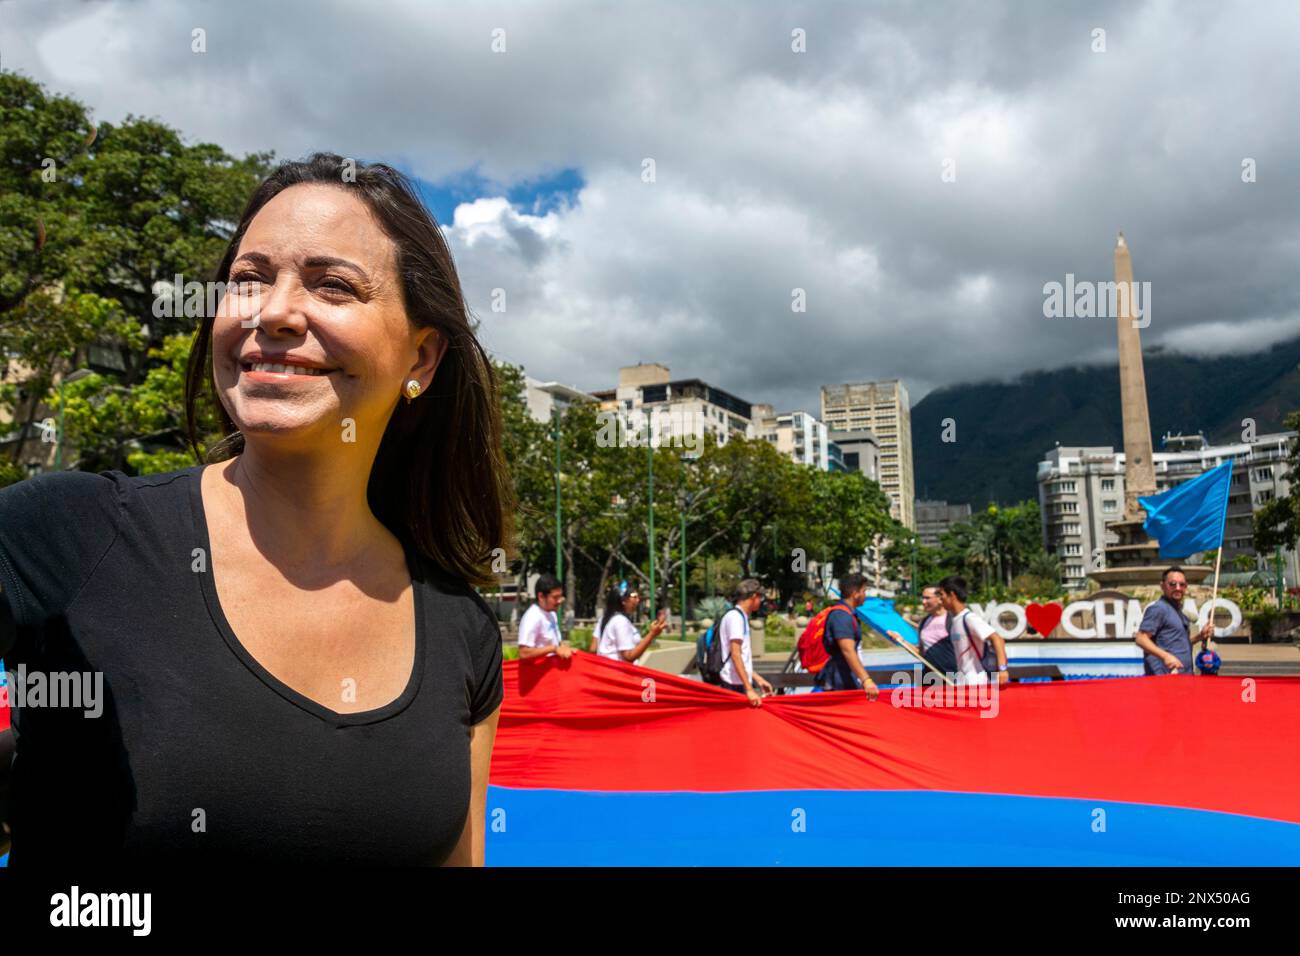 Maria Corina Machado, politicien vénézuélien, ancienne députée de l'Assemblée nationale vénézuélienne. Candidat aux primaires de l'opposition vénézuélienne pour t Banque D'Images